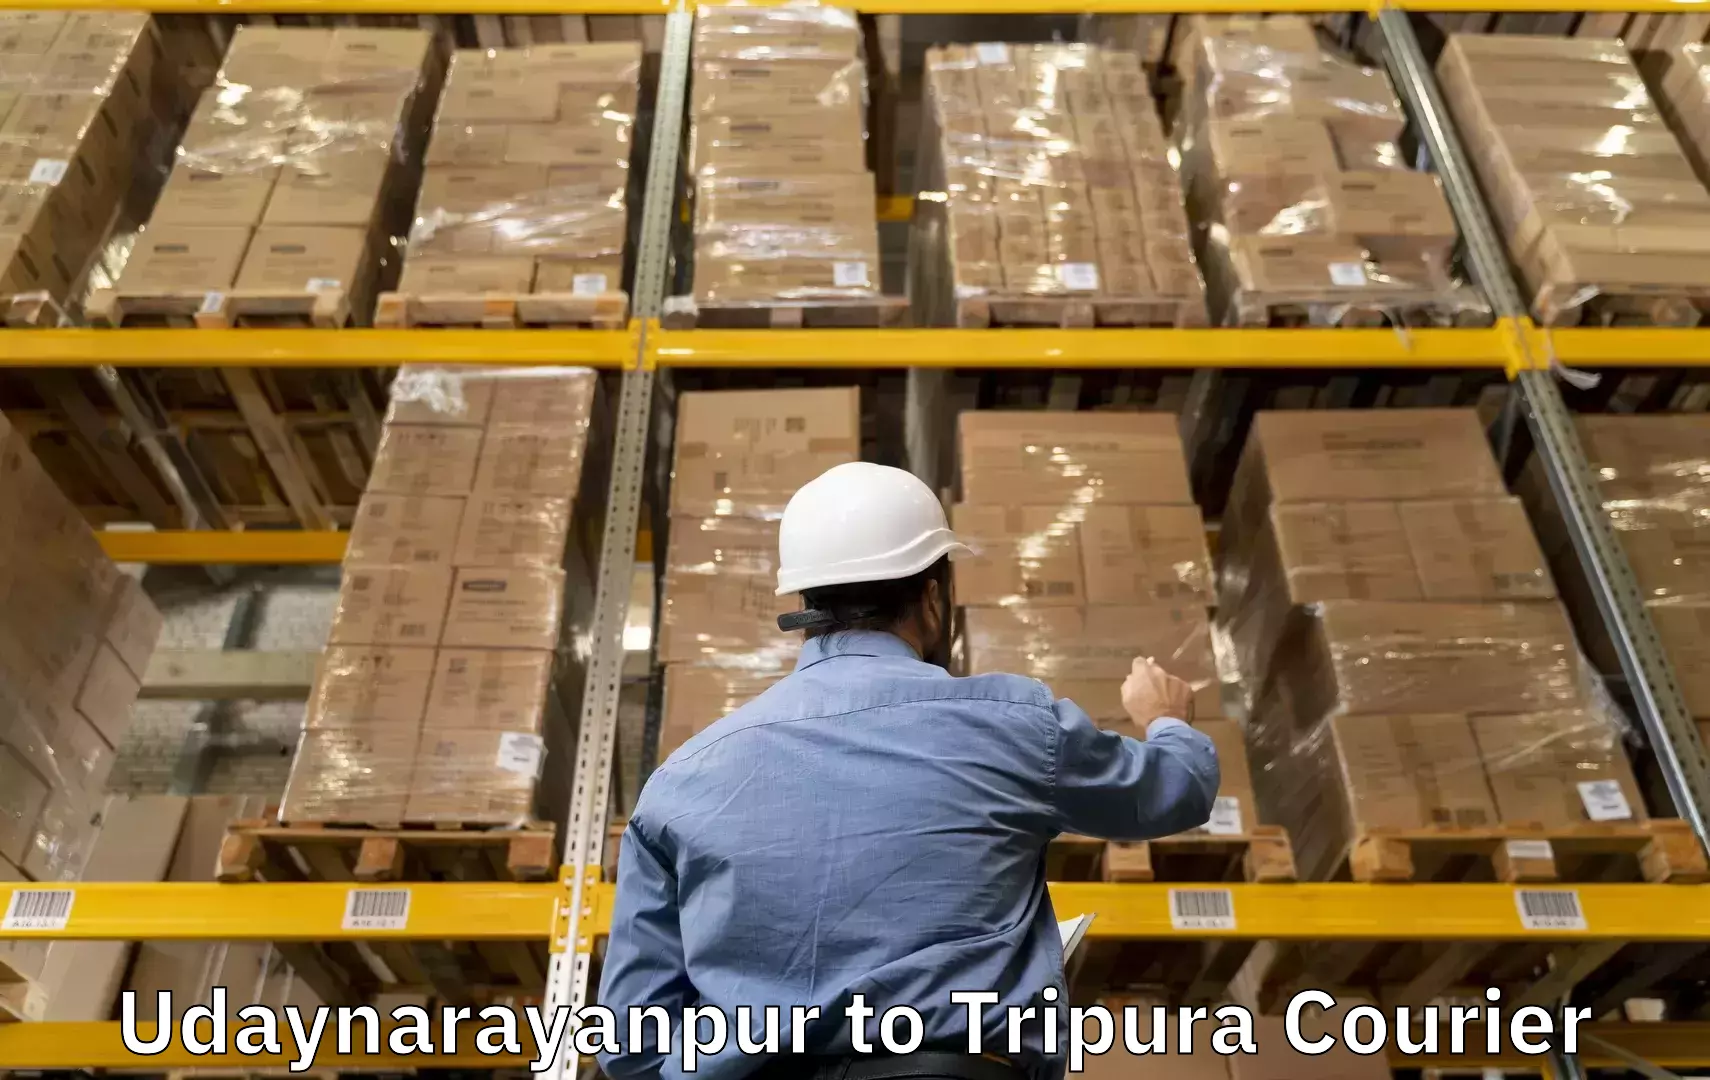 Baggage transport management Udaynarayanpur to Dhalai